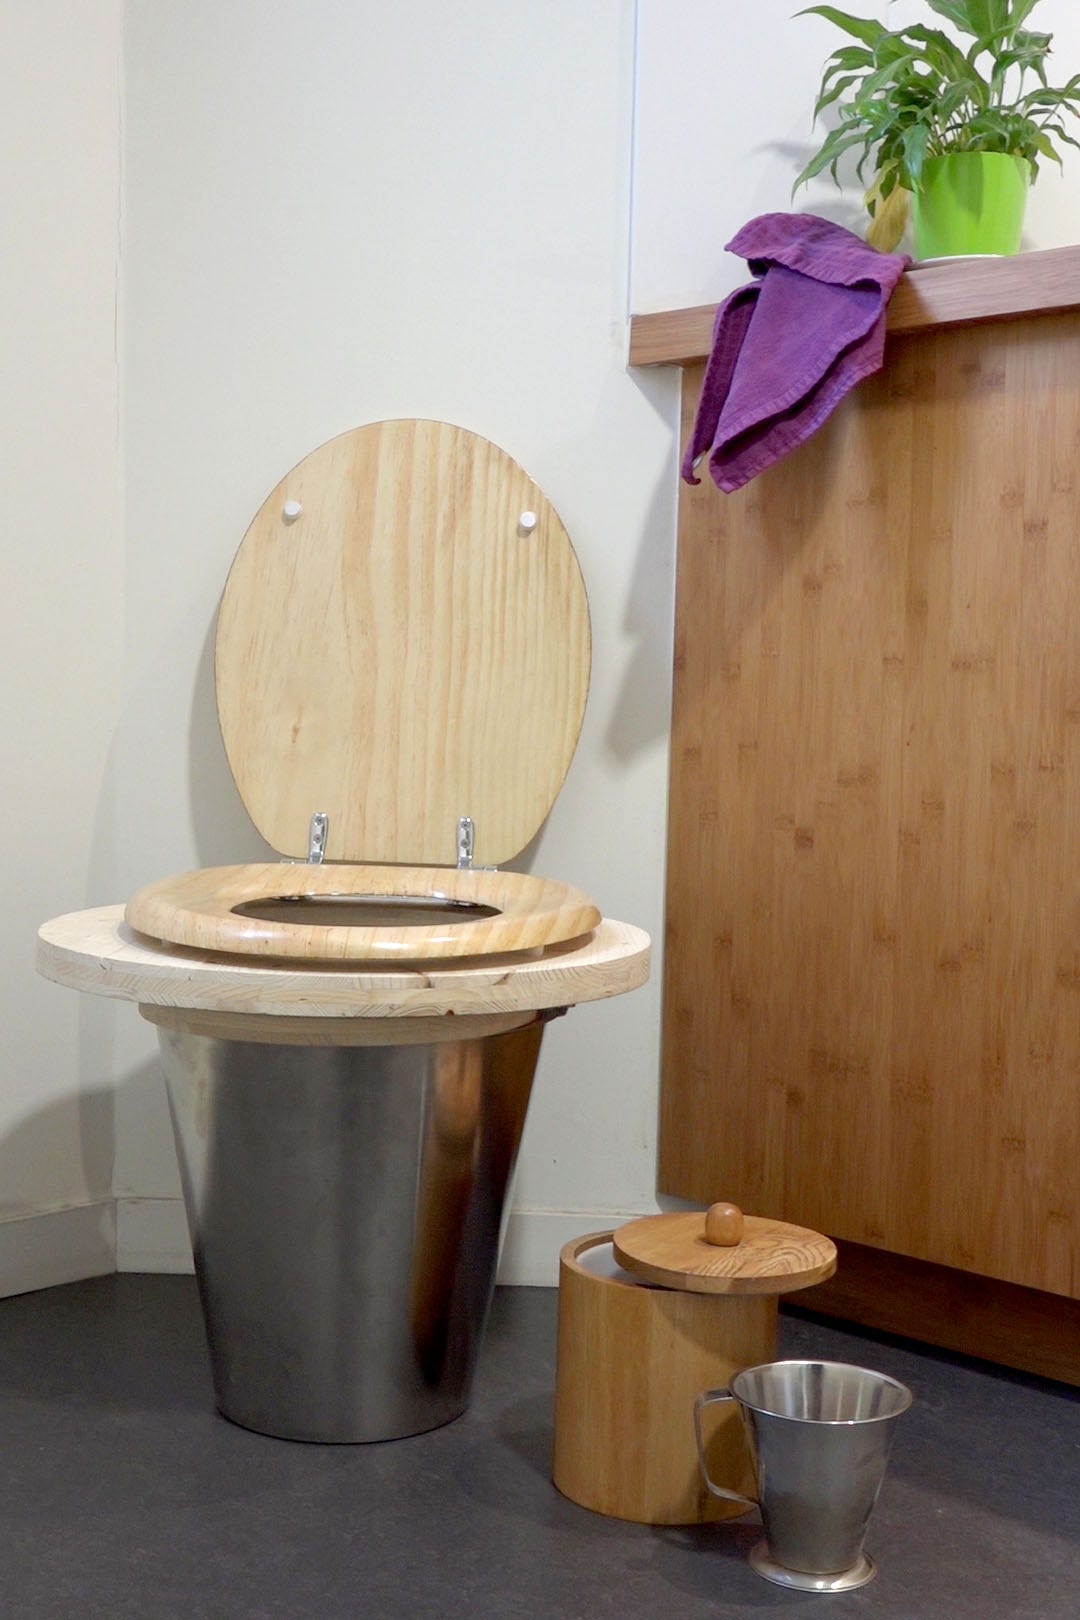 LOWTECHTOUR_FR] Escale #5 / Sergy / Les Toilettes sèches | by Low-tech Lab  | Low-tech Lab Stories | Medium